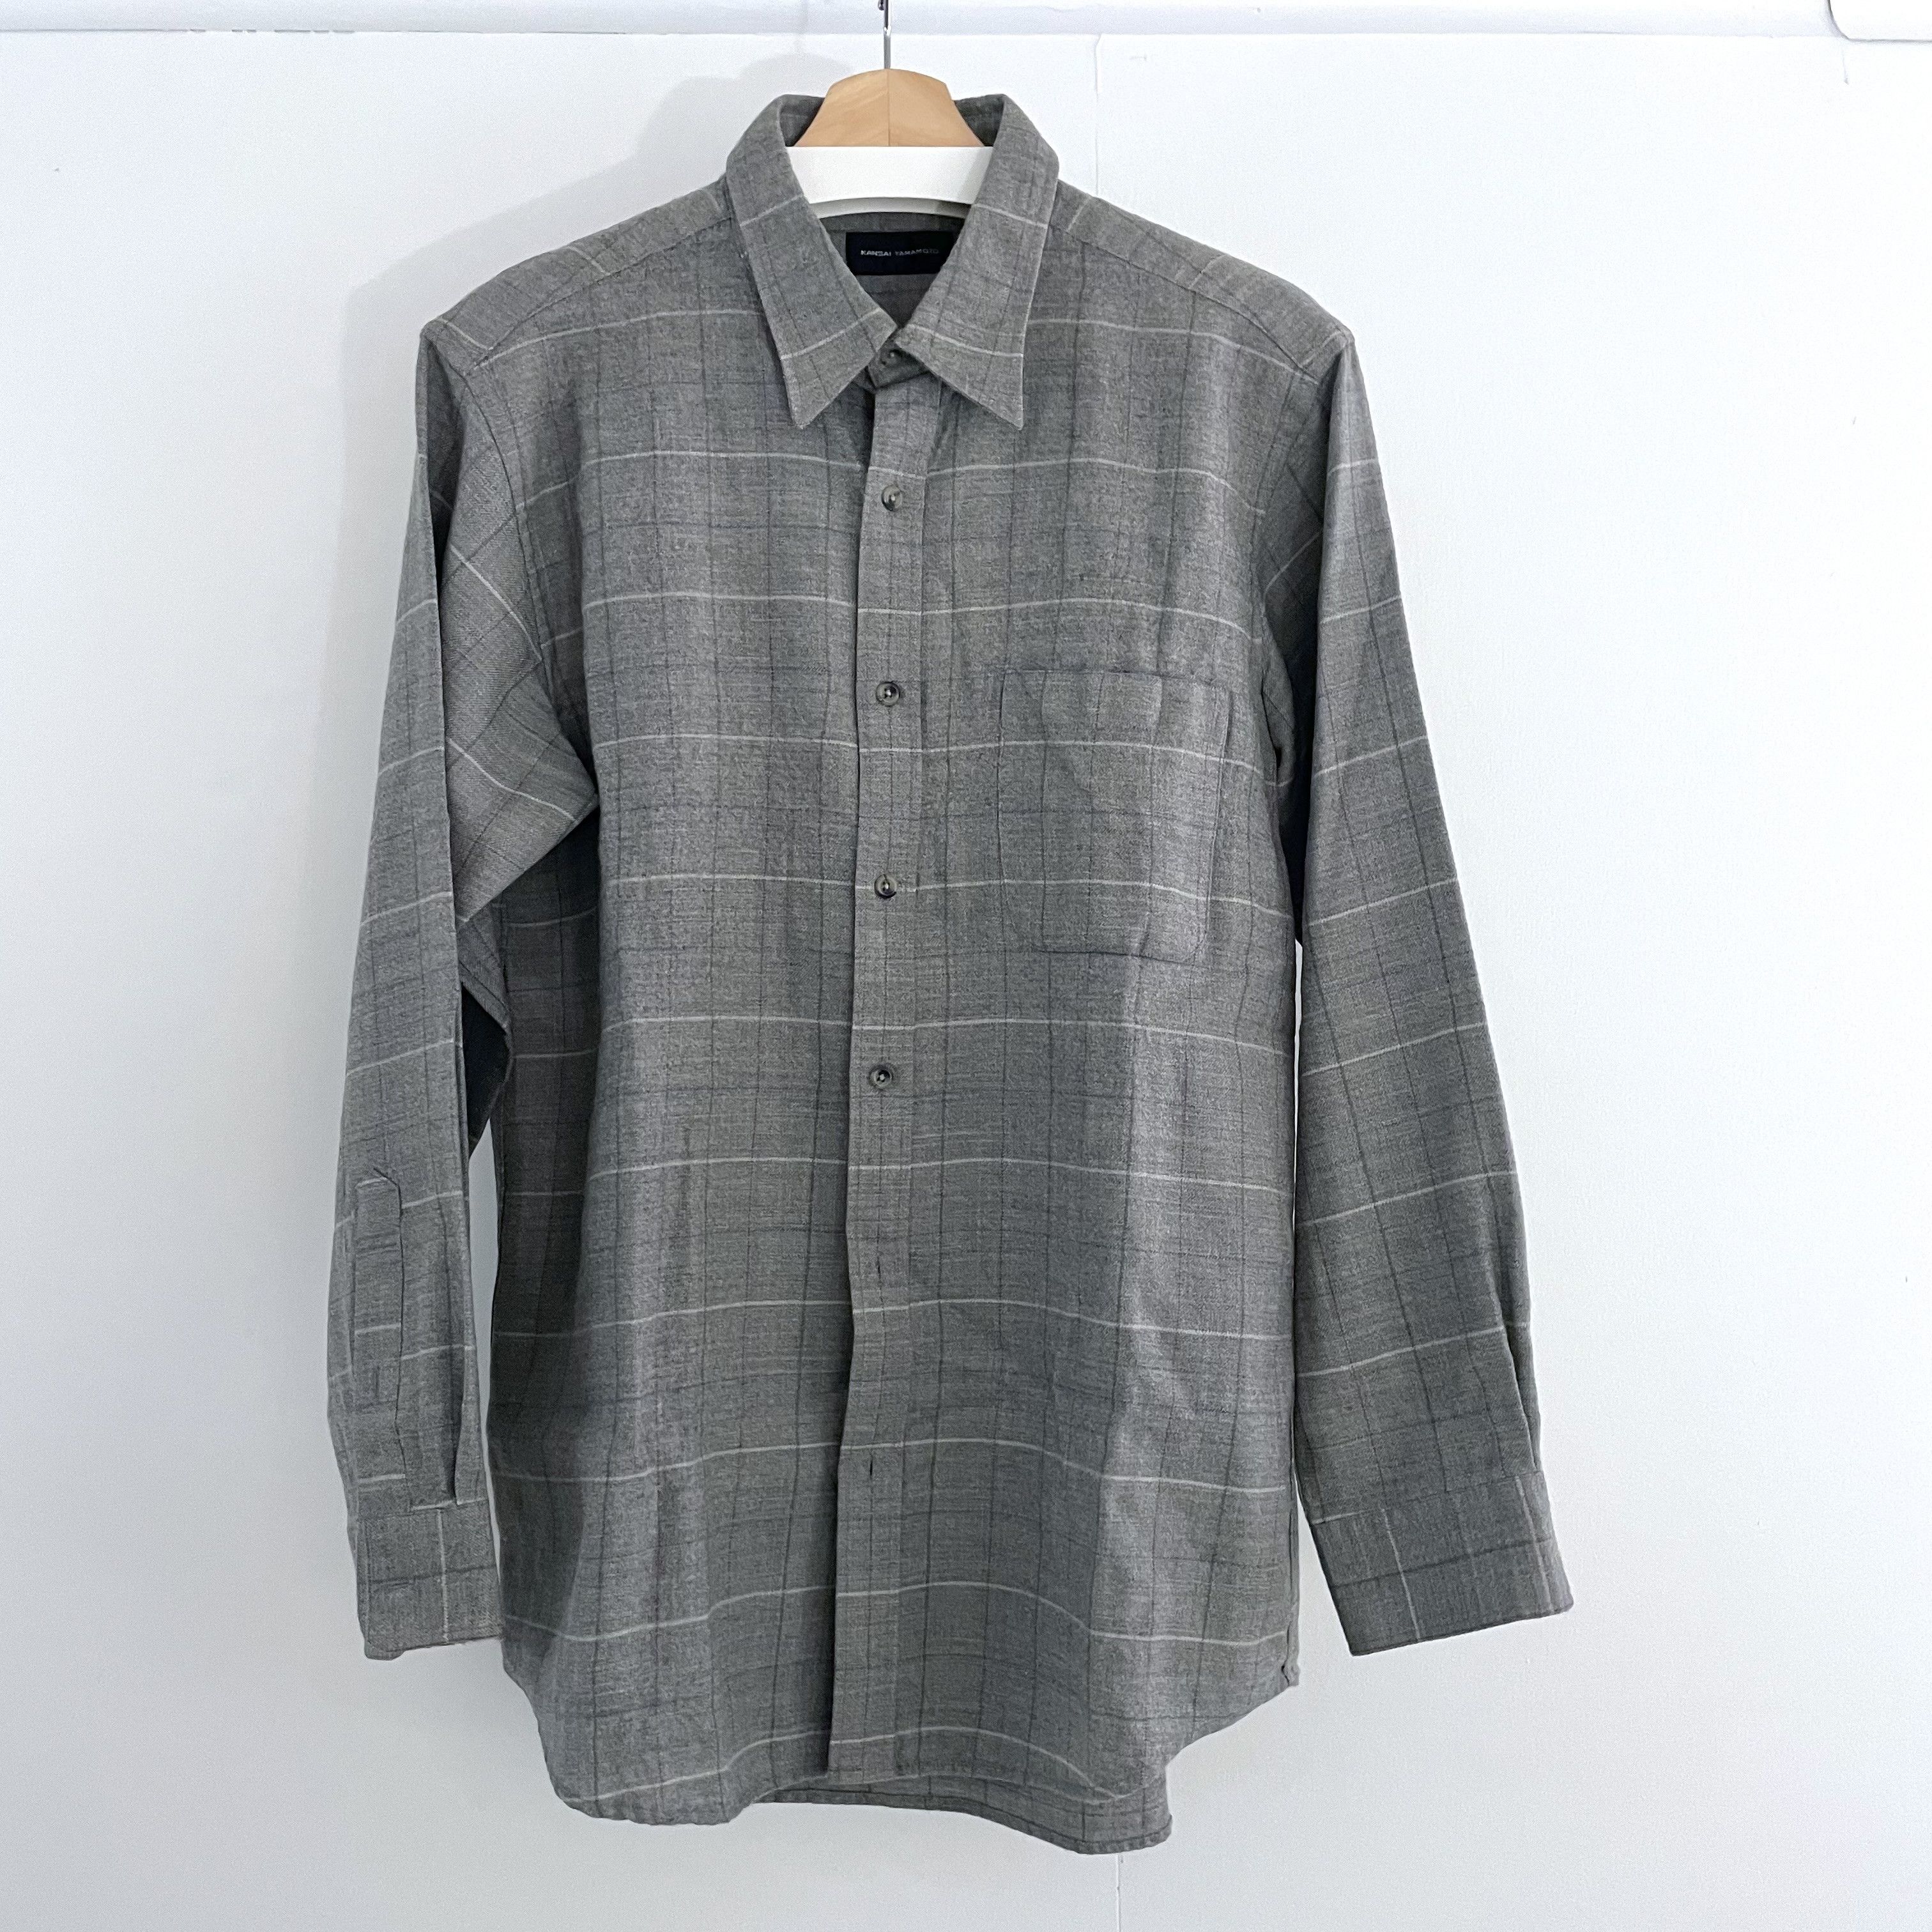 Kansai Yamamoto - Minimalist Check Shirt, Wool, (JP LL) - 1